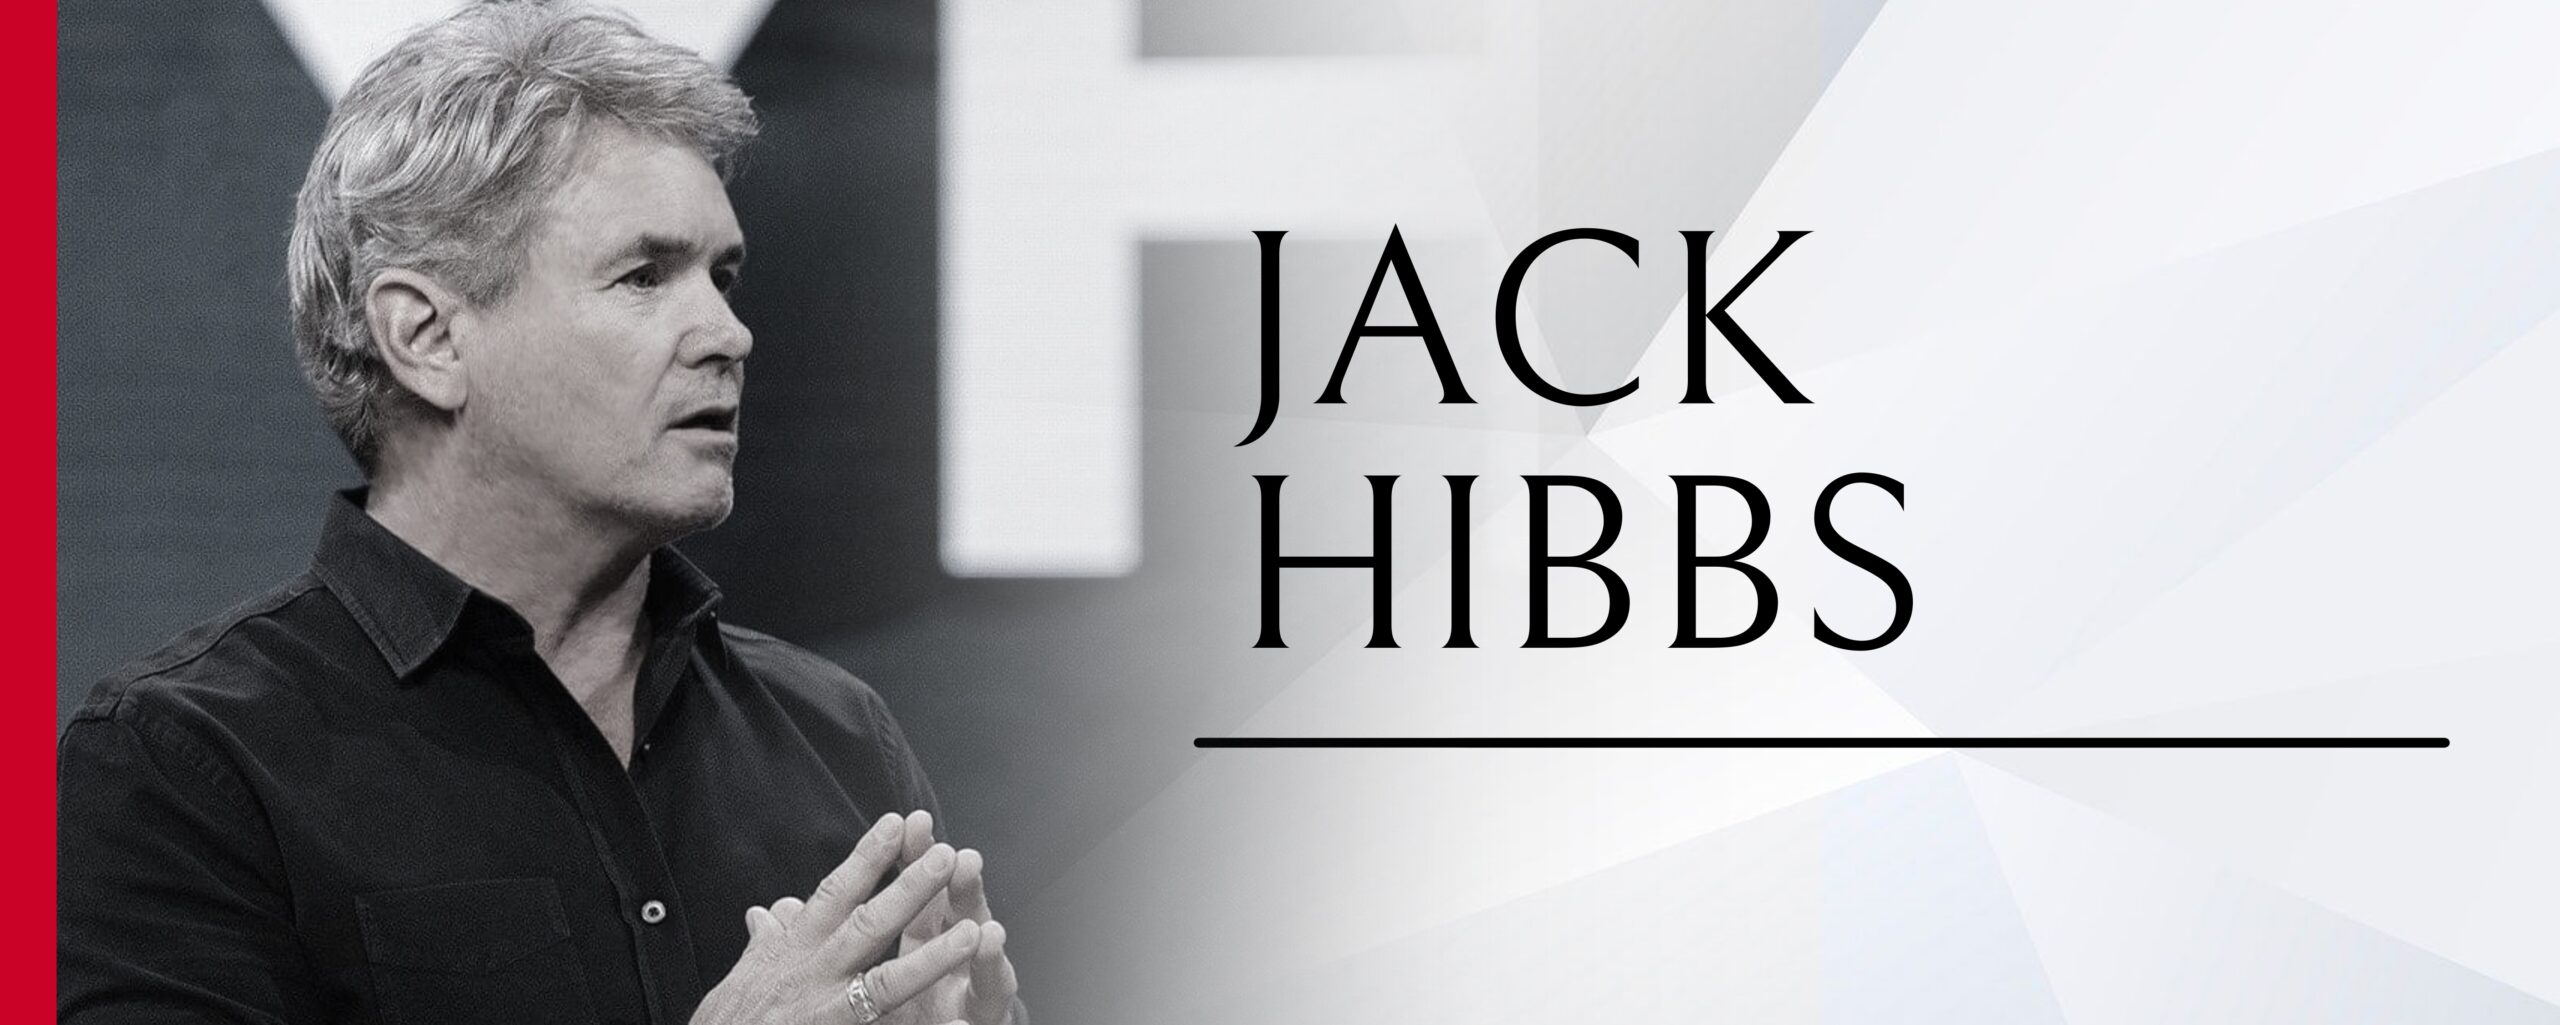 jack hibbs latest